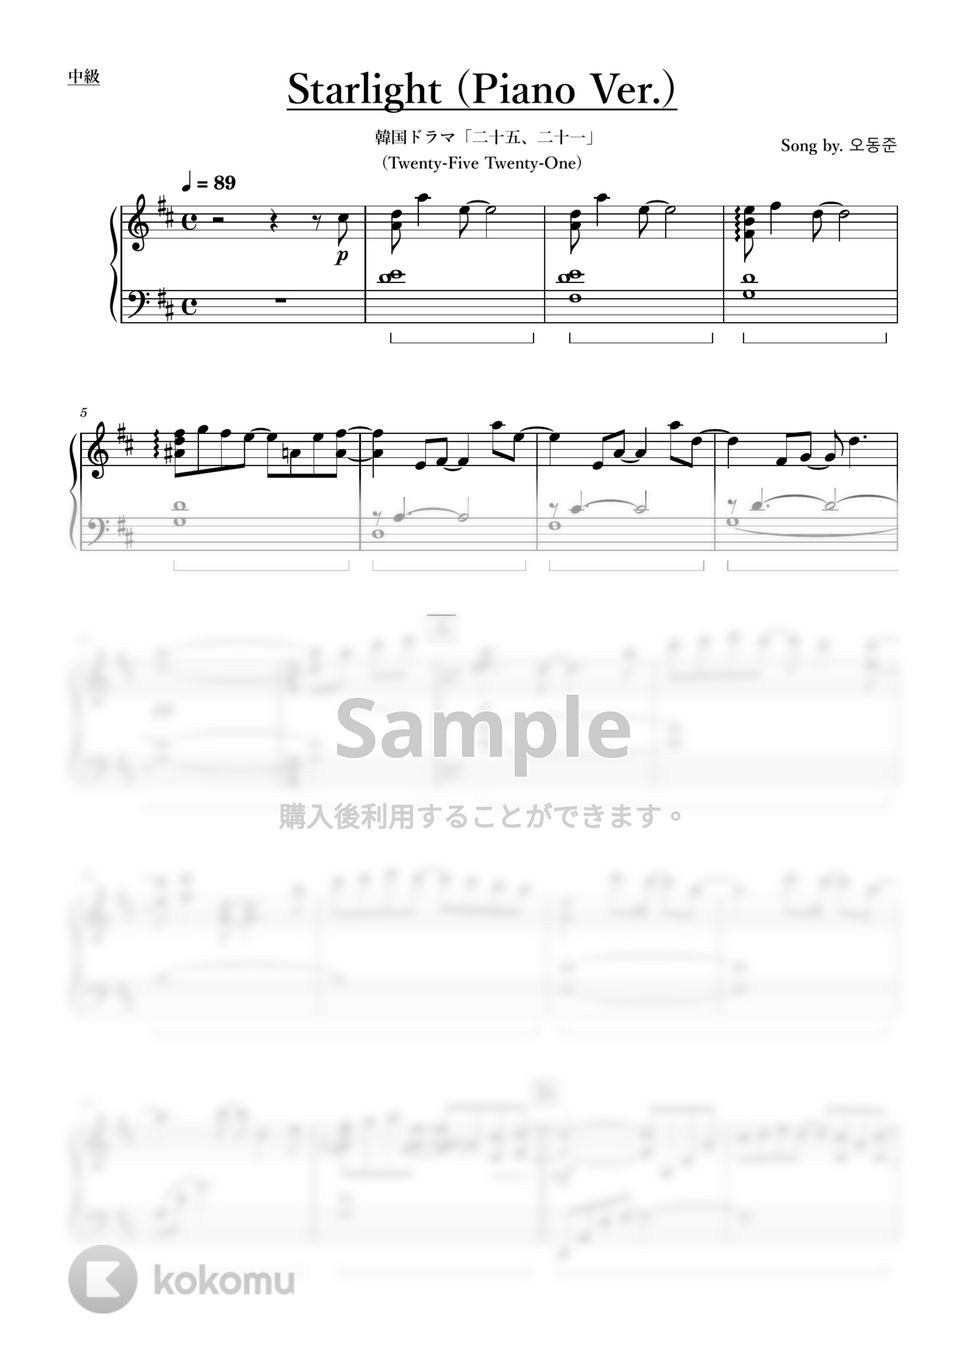 韓国ドラマ「二十五、二十一」 (Twenty-Five Twenty-One) - Starlight (Piano Ver.) by ちゃんRINA。